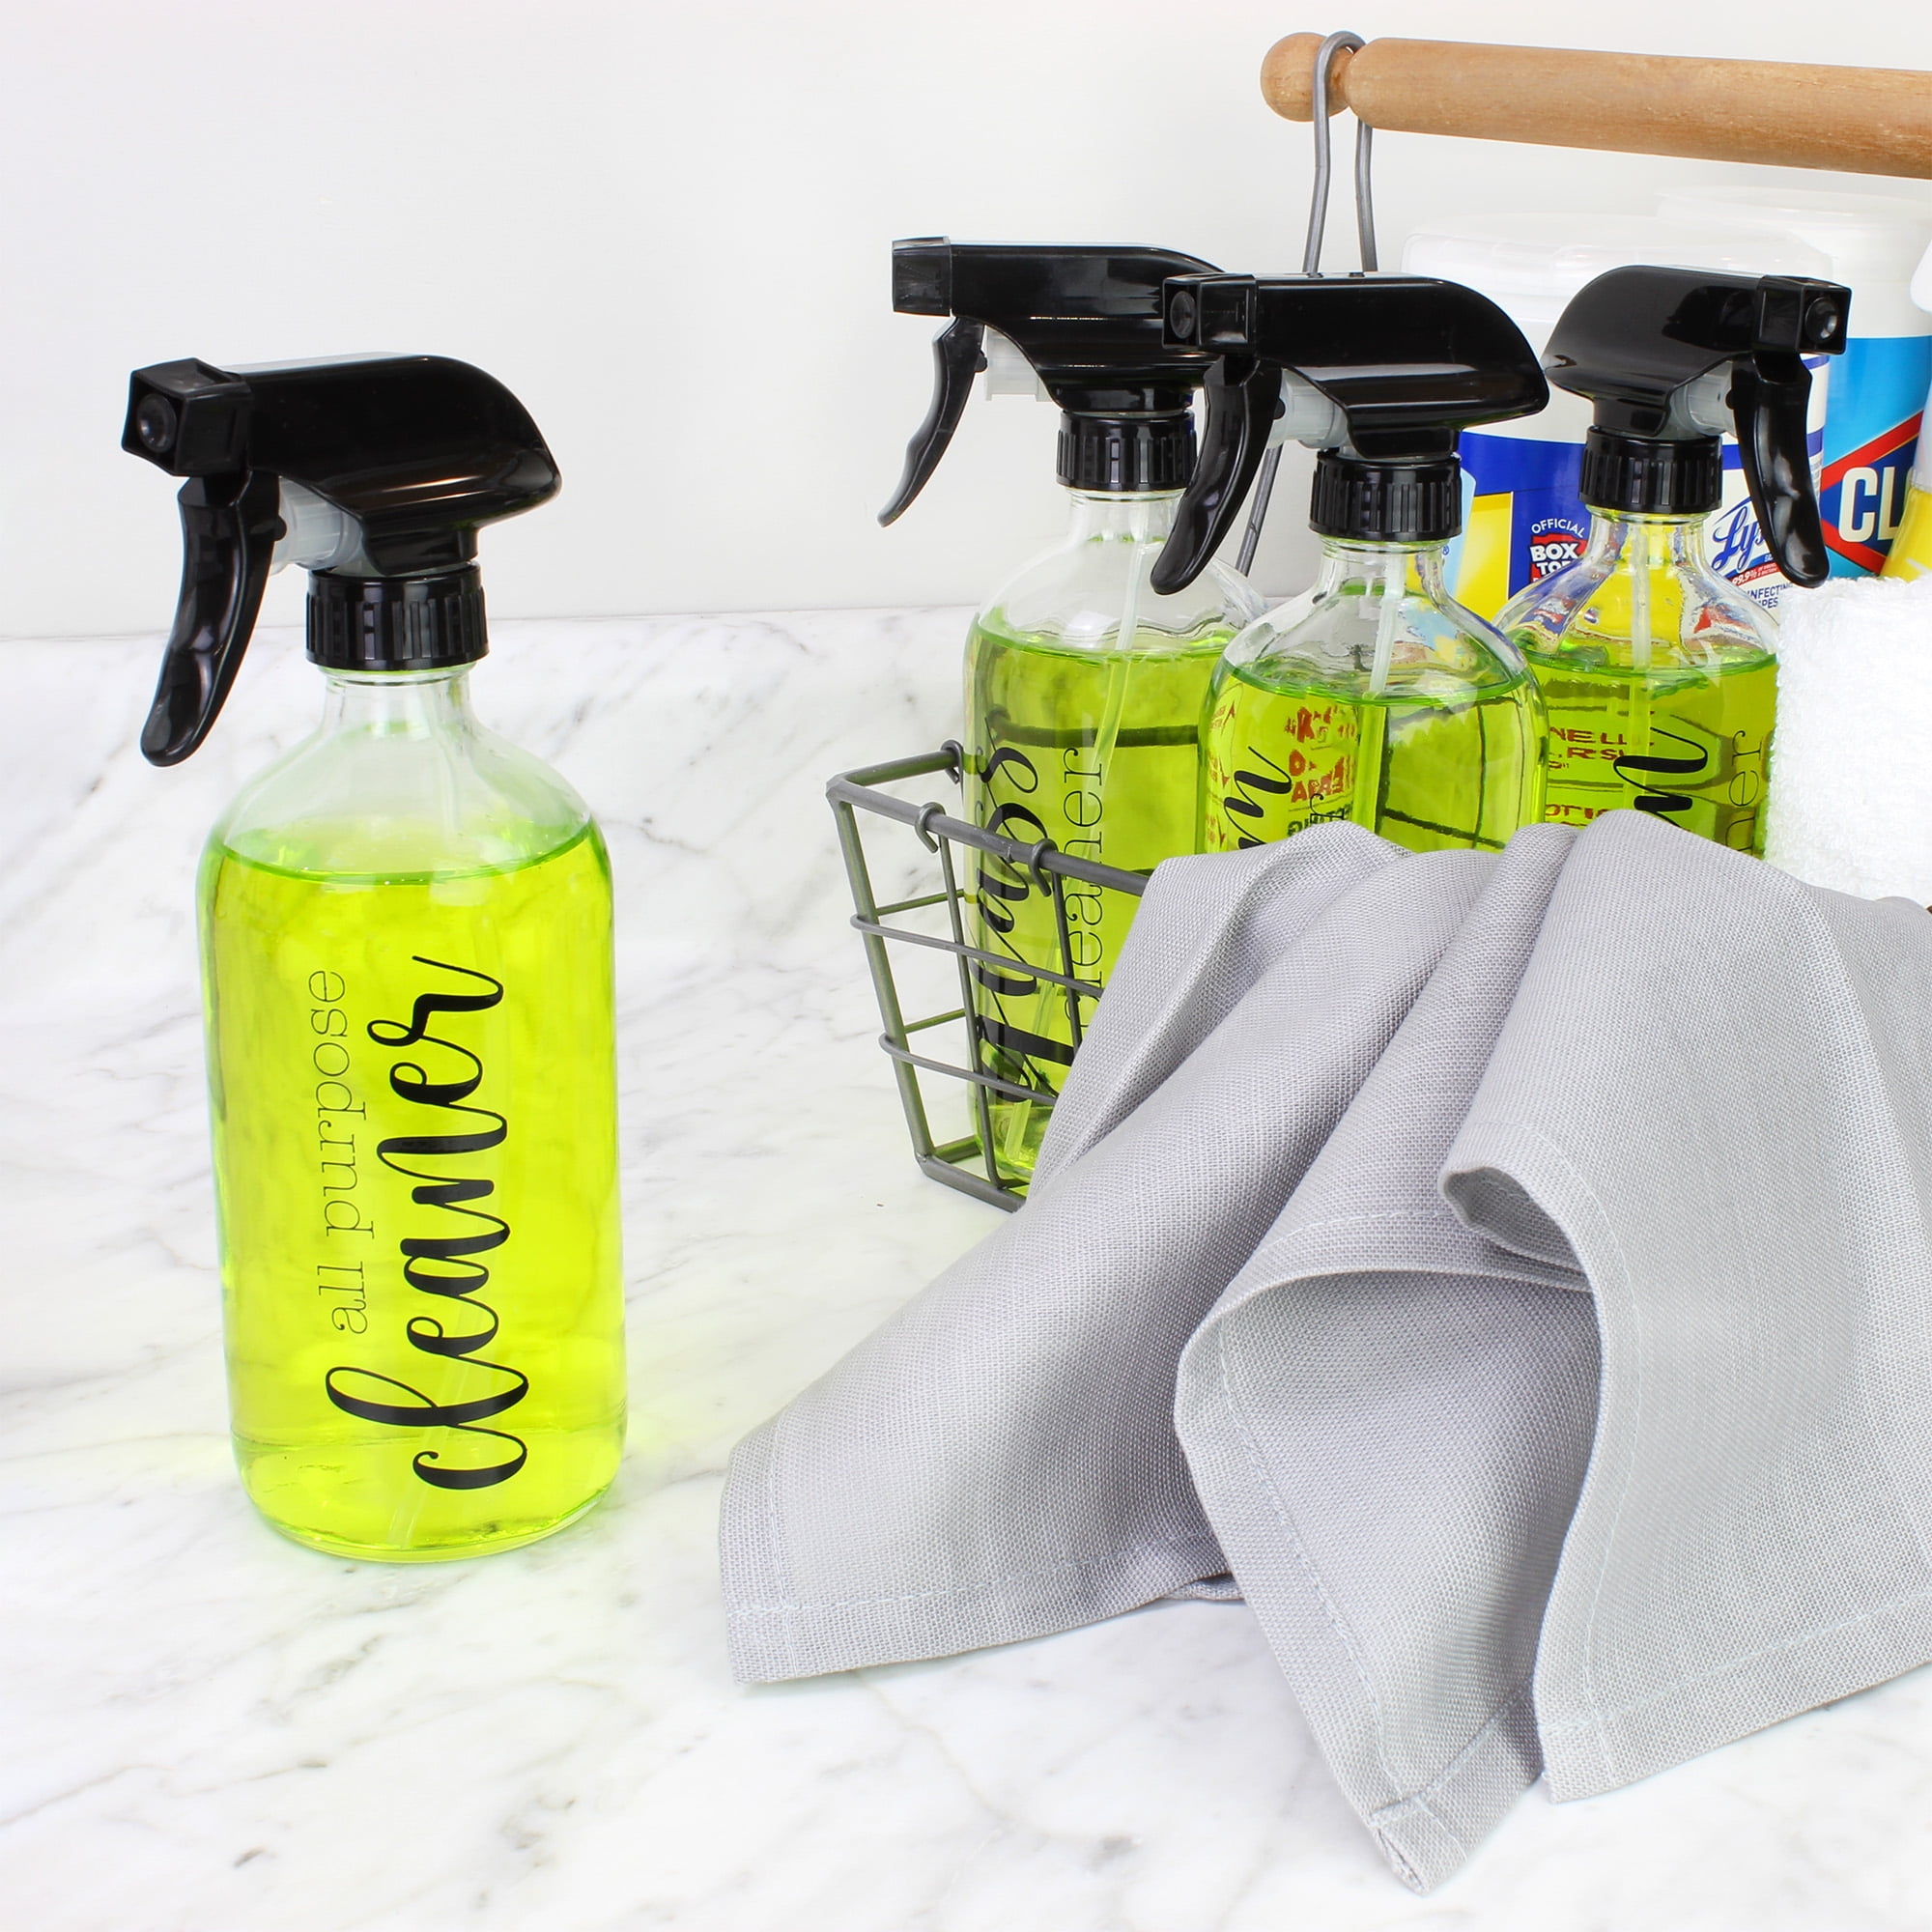 Household Cleaner Spray bottles for cleaning, Modern farmhouse